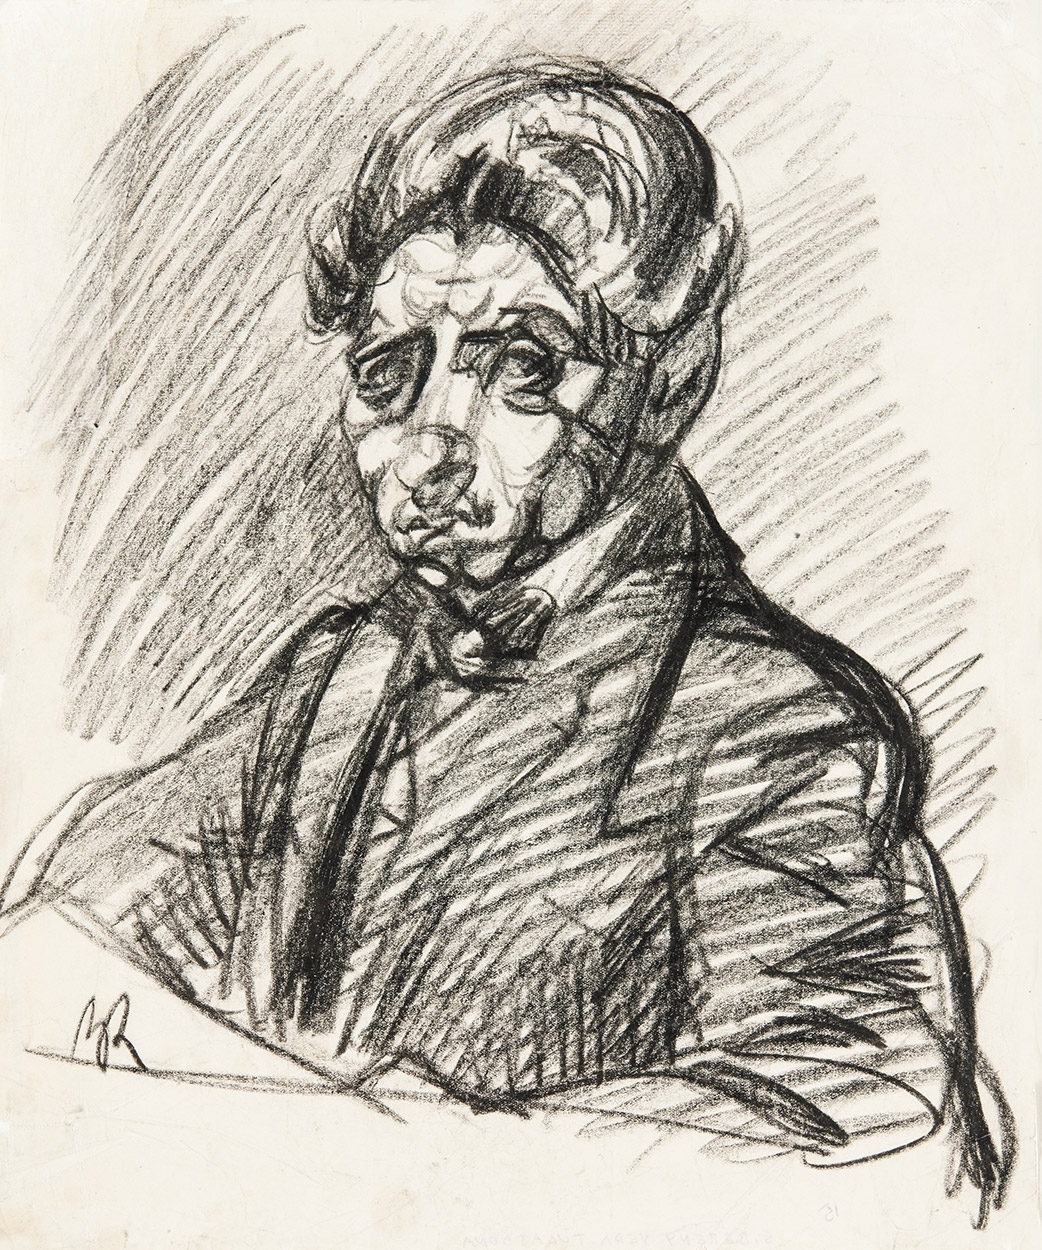 Berény Róbert (1887-1953) Önarckép-rajz, 1912 körül